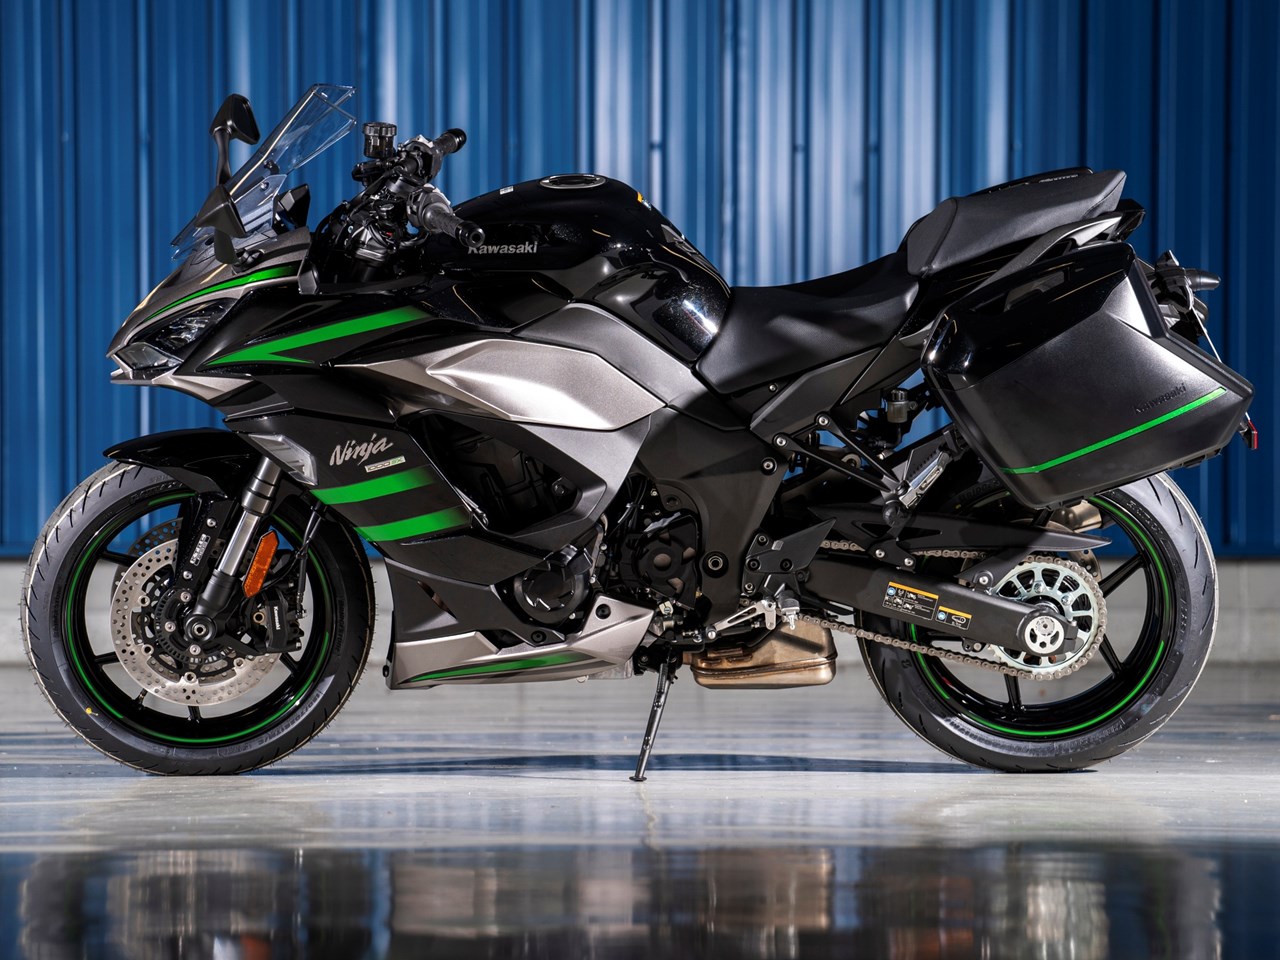 2020 Kawasaki Ninja 1000 SX First Ride Review